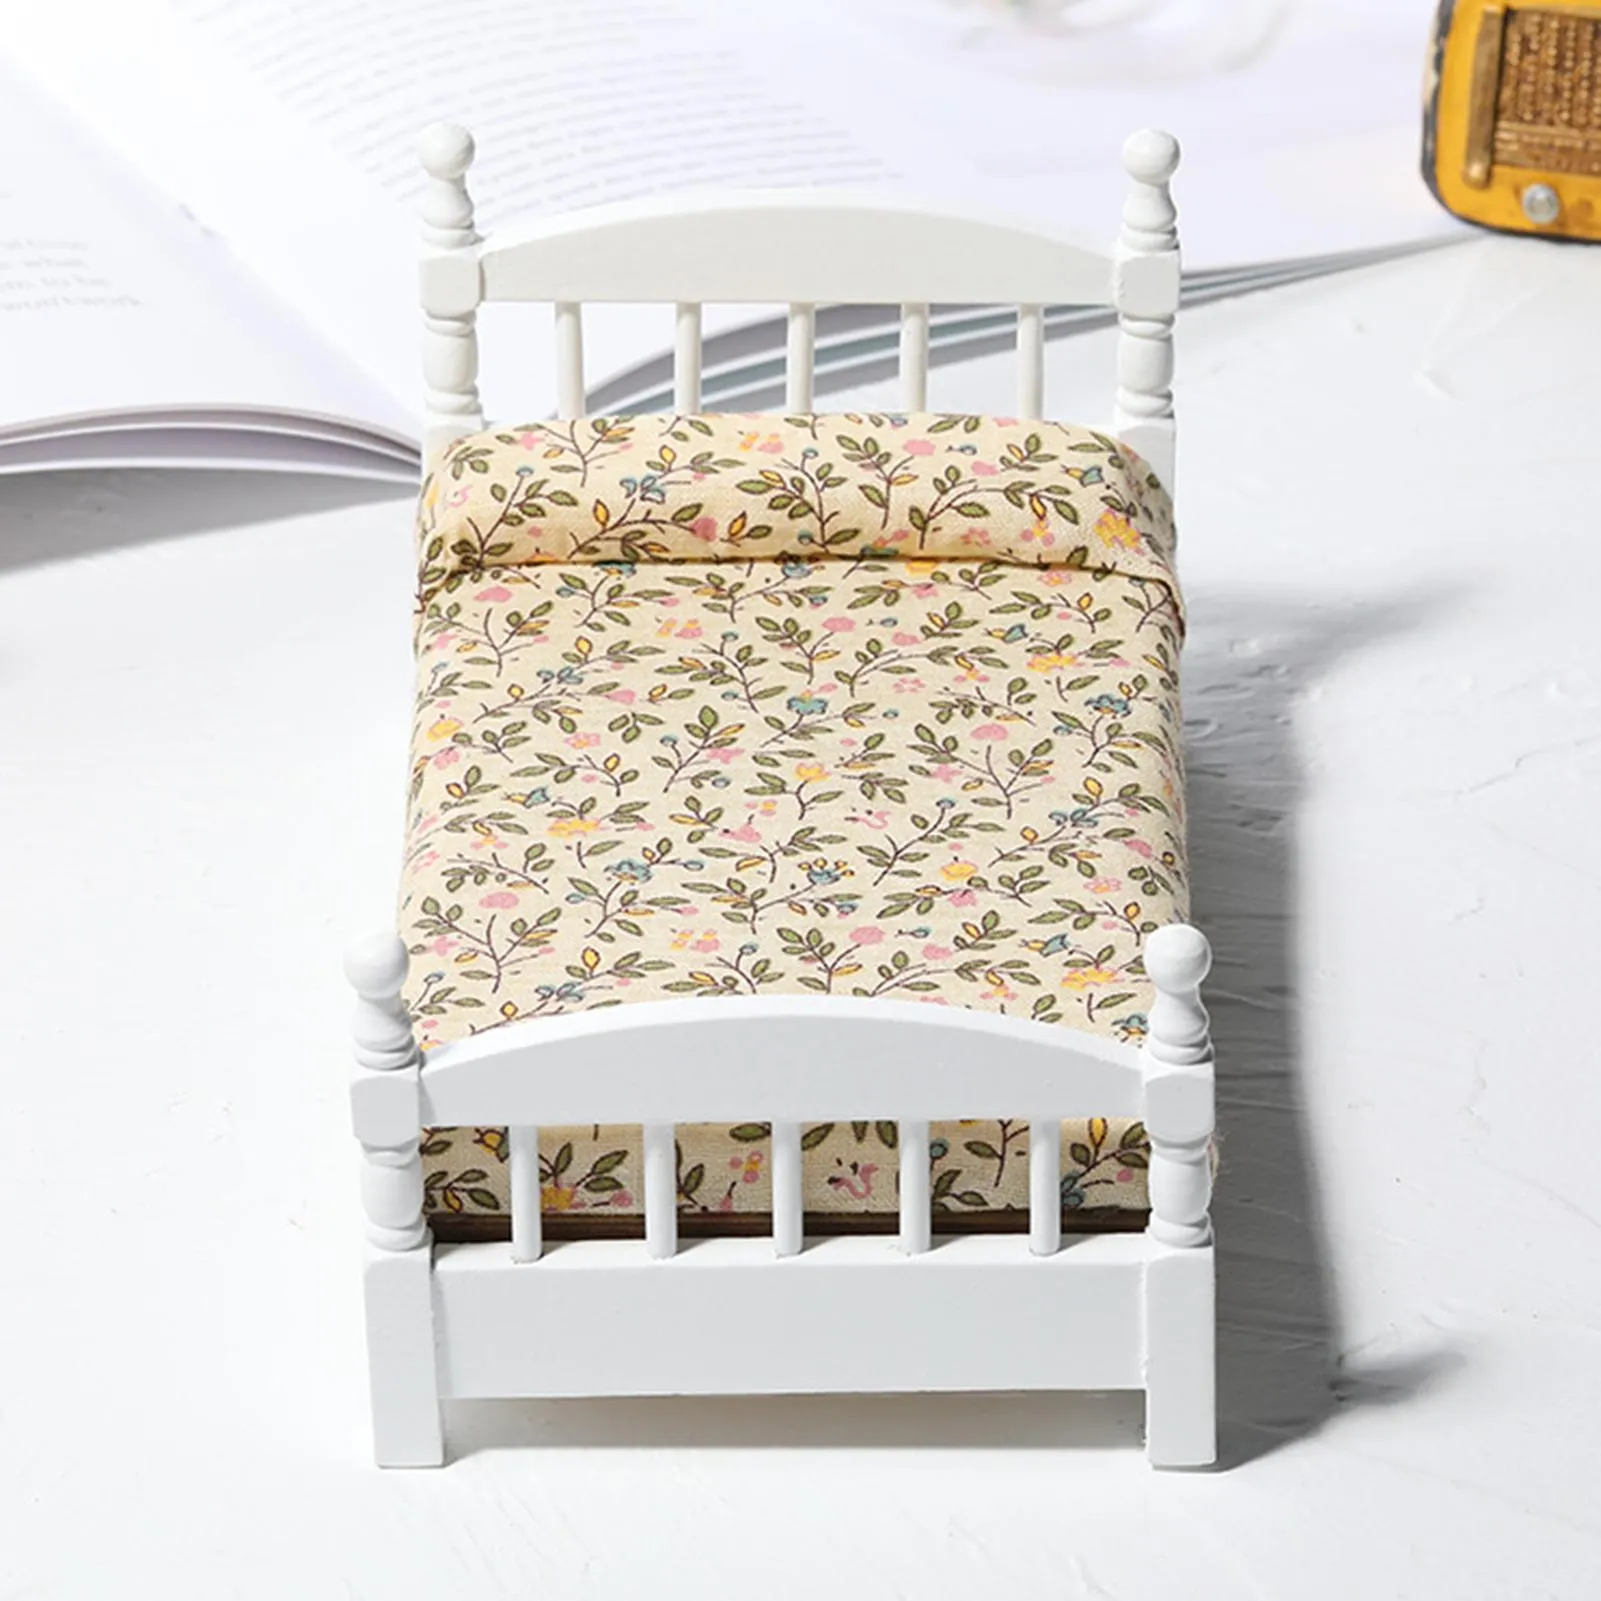 1/12 simpatico letto in legno in miniatura soggiorno giocattolo arredamento mobili modello ornamento giocattoli educativi per bambini regali per bambini